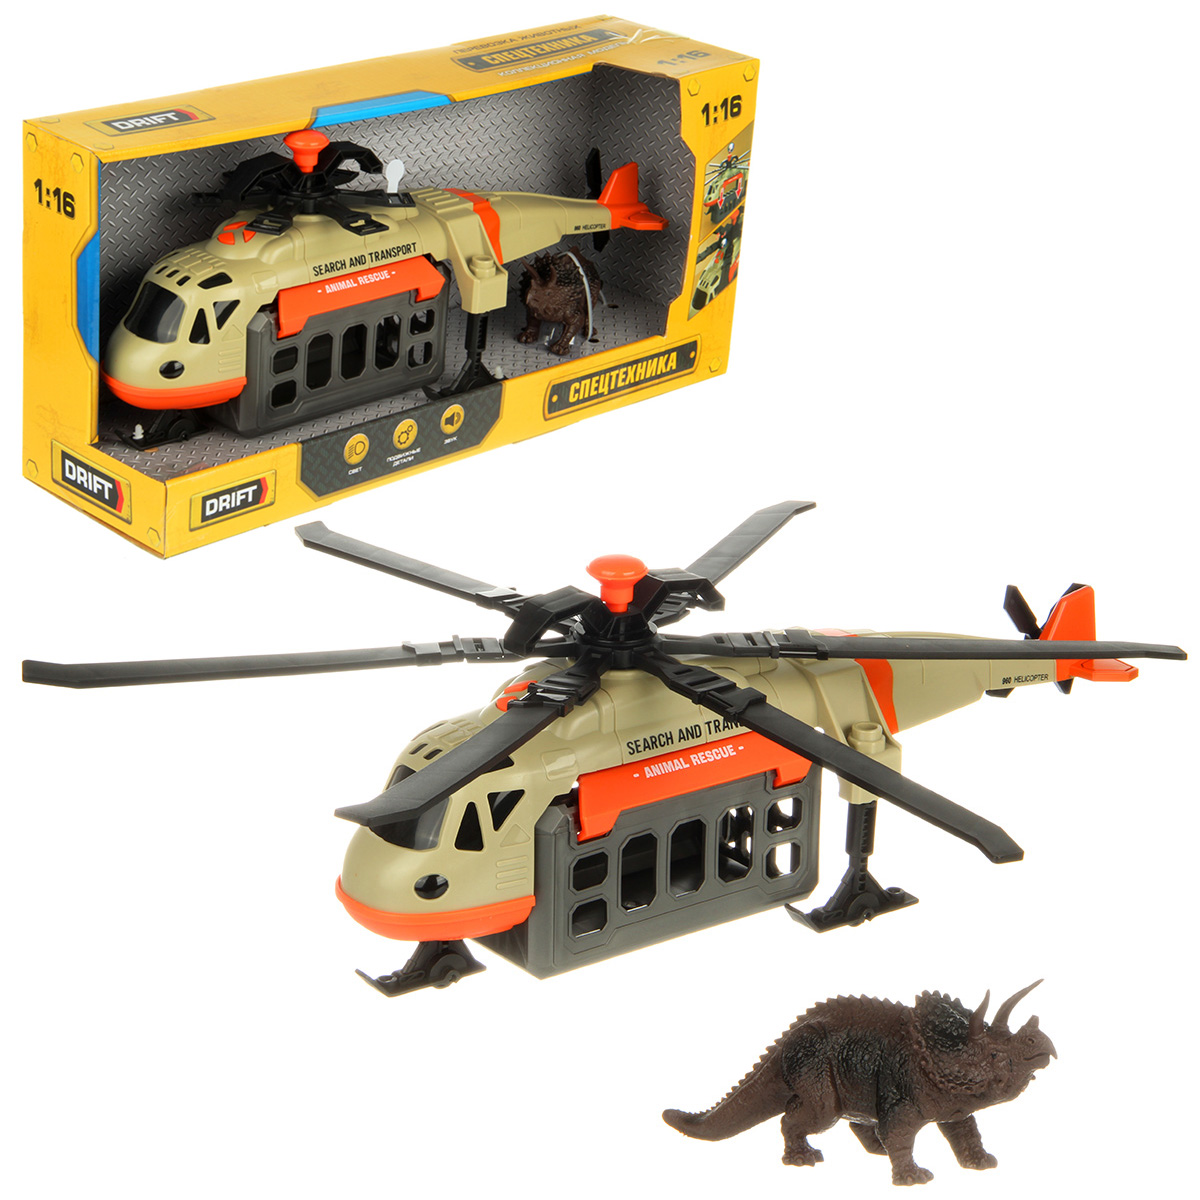 Вертолет игрушечный Drift Перевозка животных 1:16 130978 держатели верхних и нижних лопастей для вертолета syma s107g